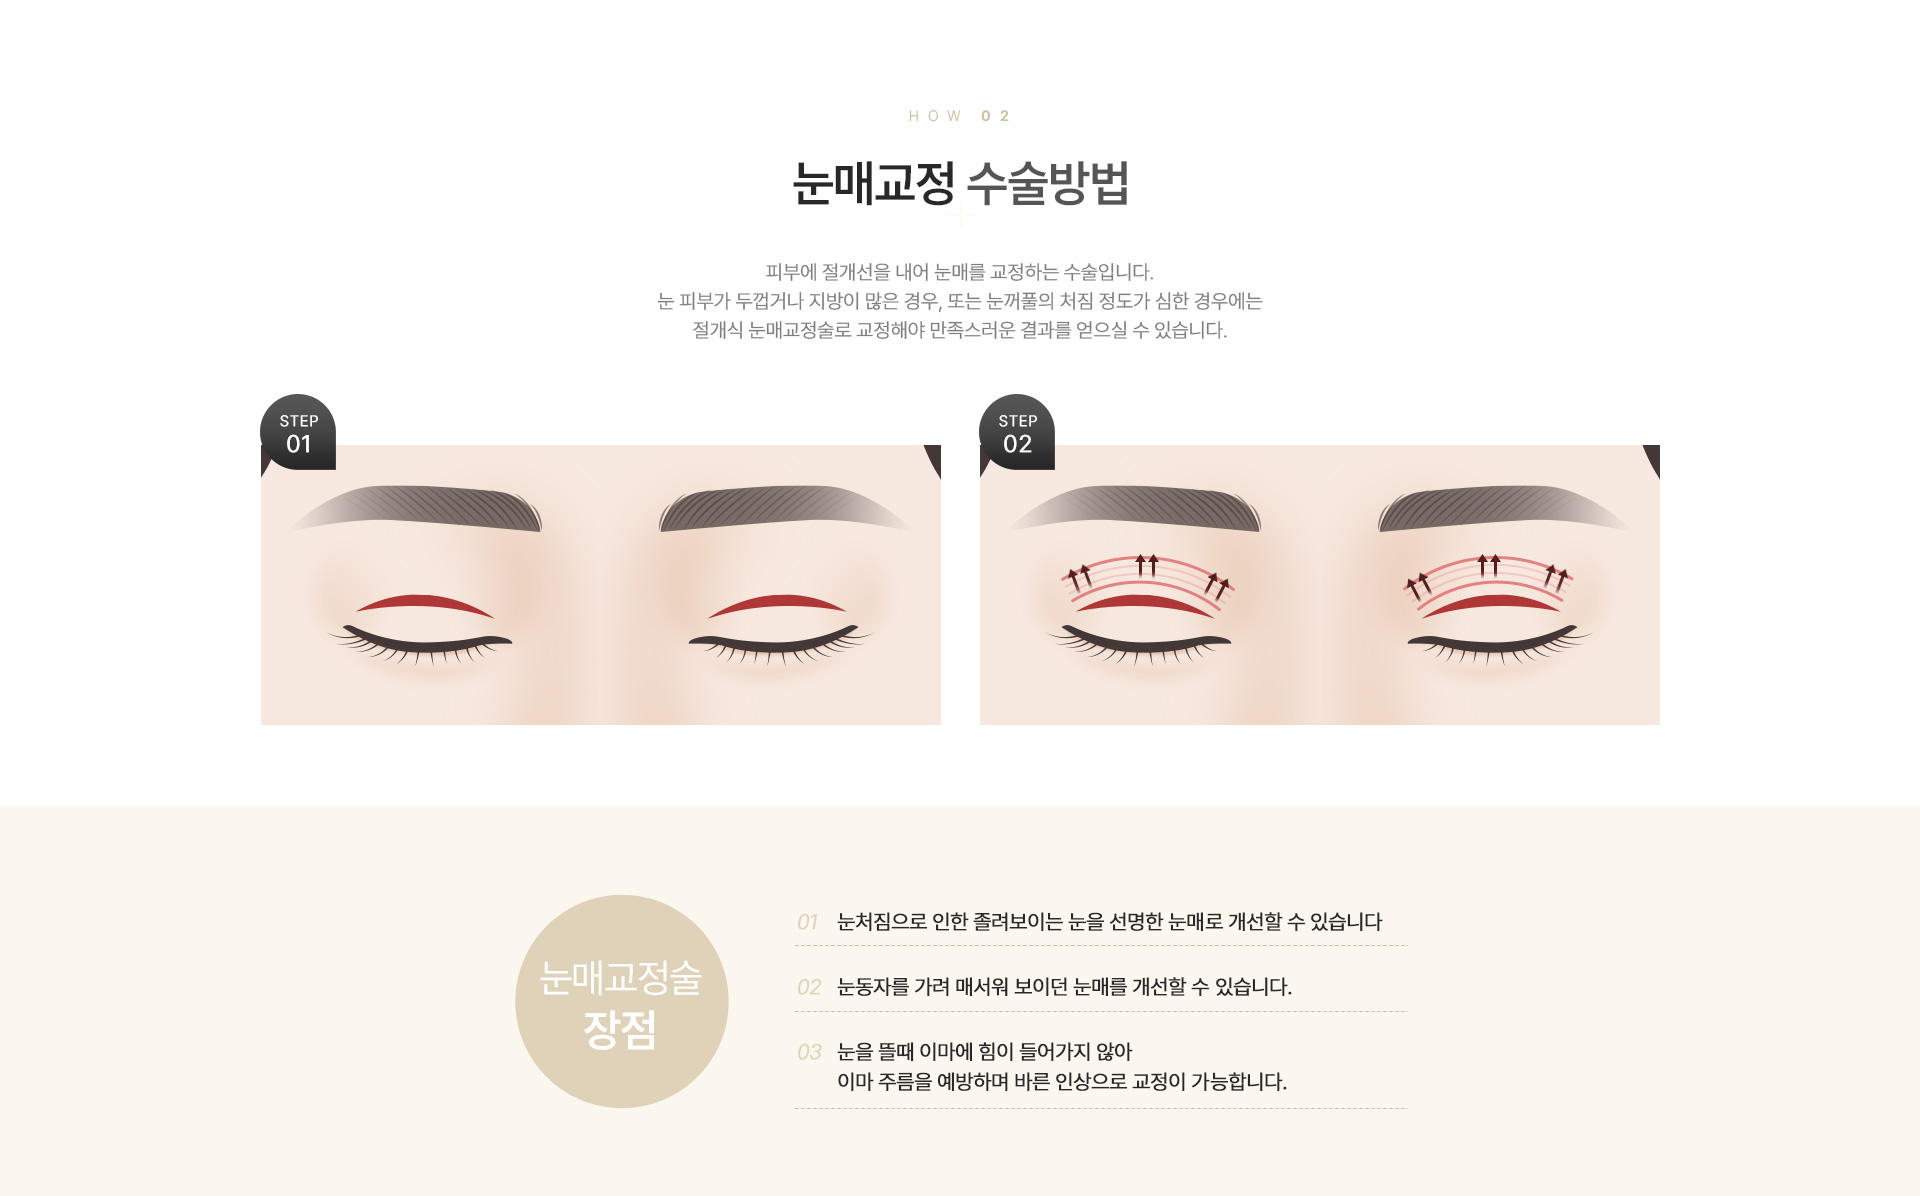 눈매교정/안검하수/재수술 수술방법